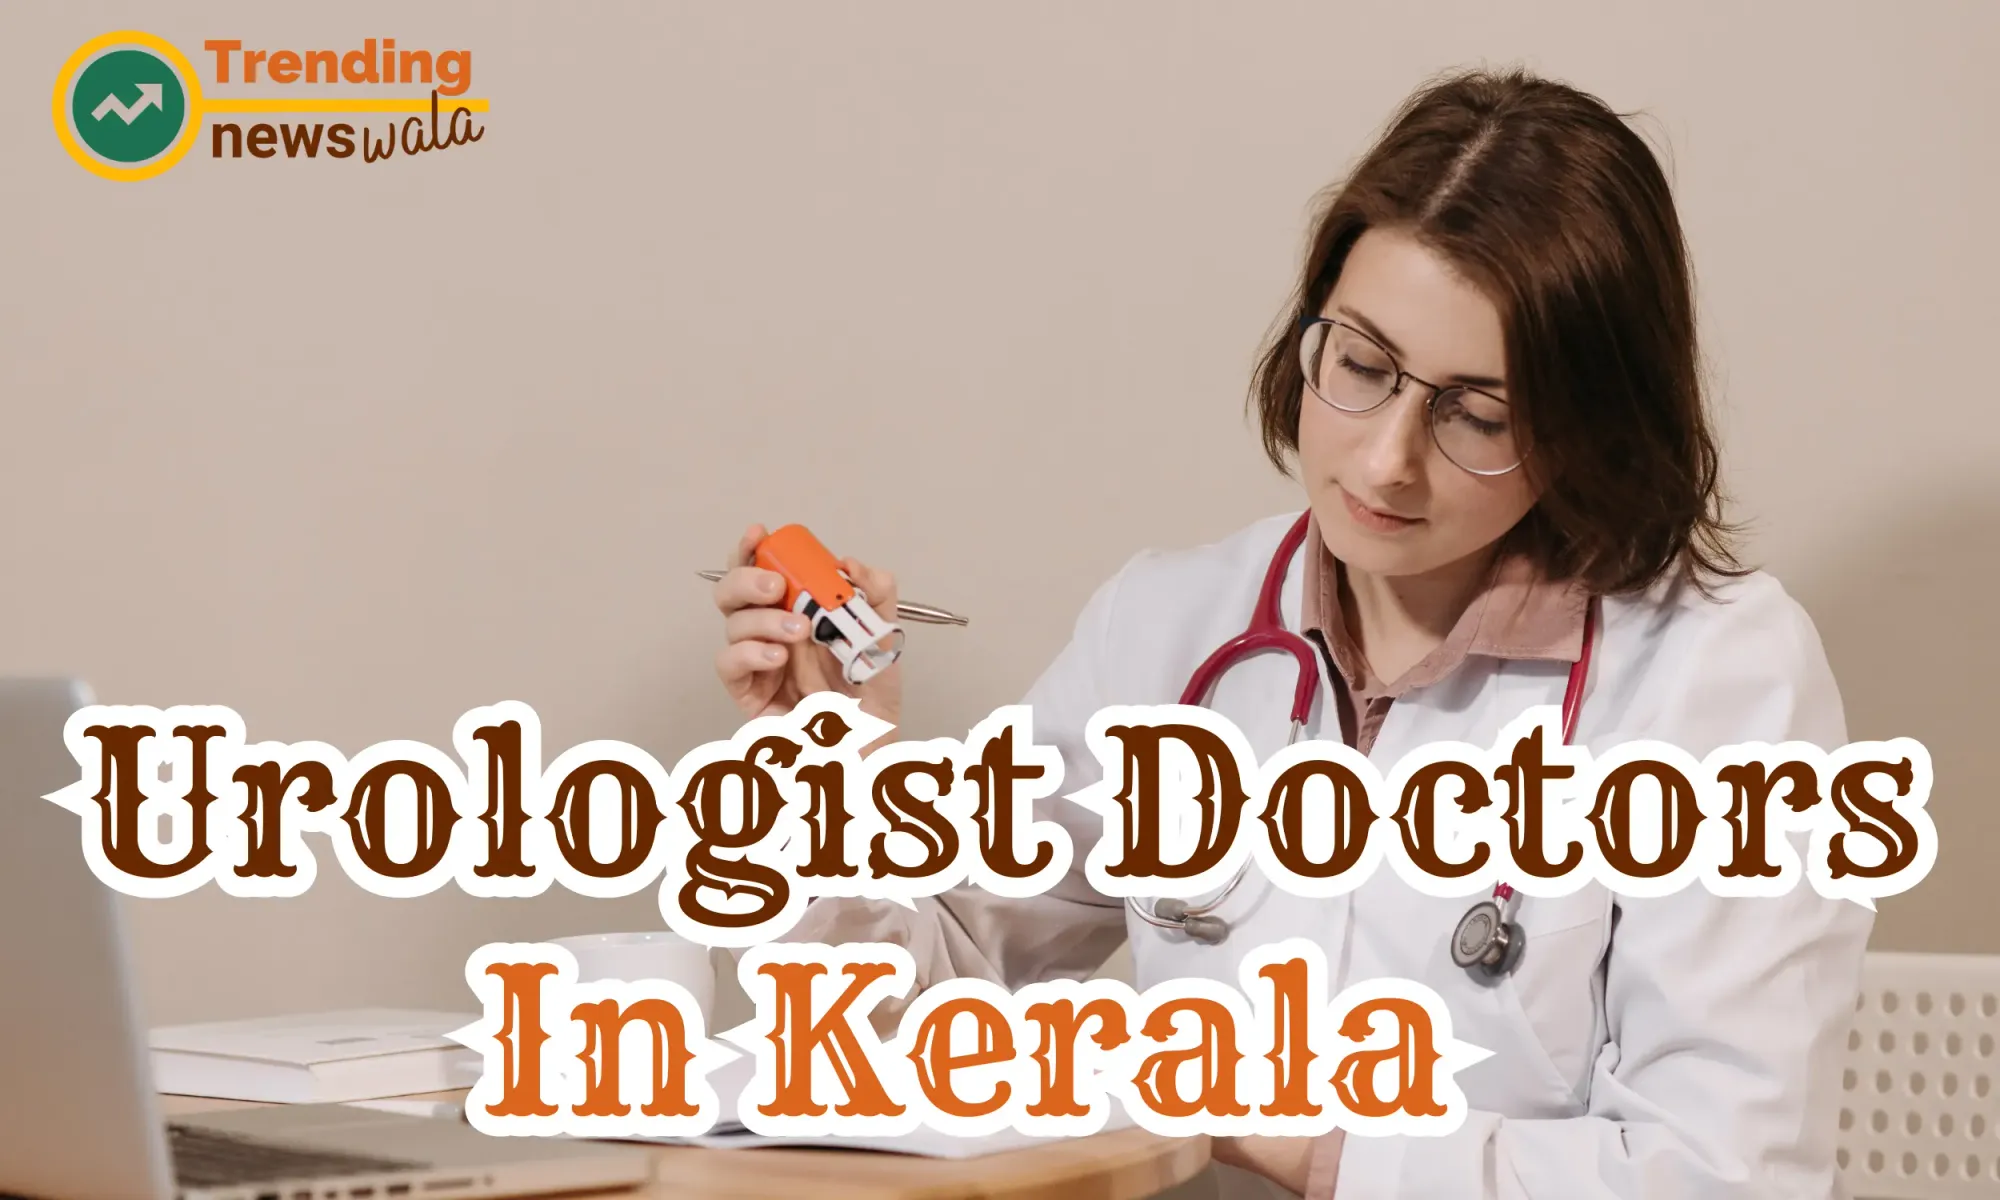 Best Urologist Doctors In Kerala